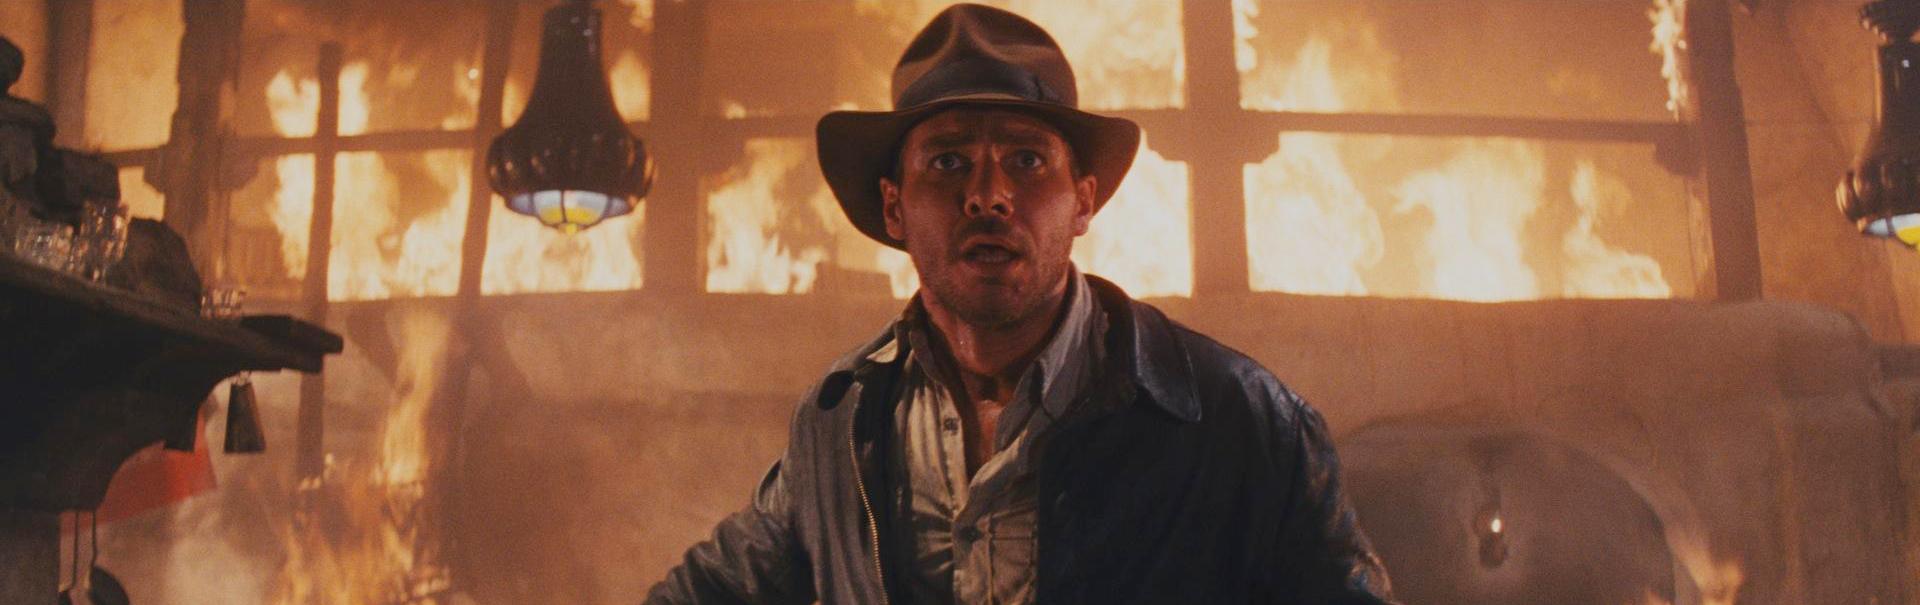 Indiana Jones : La Quadrilogie demain en Blu-Ray !